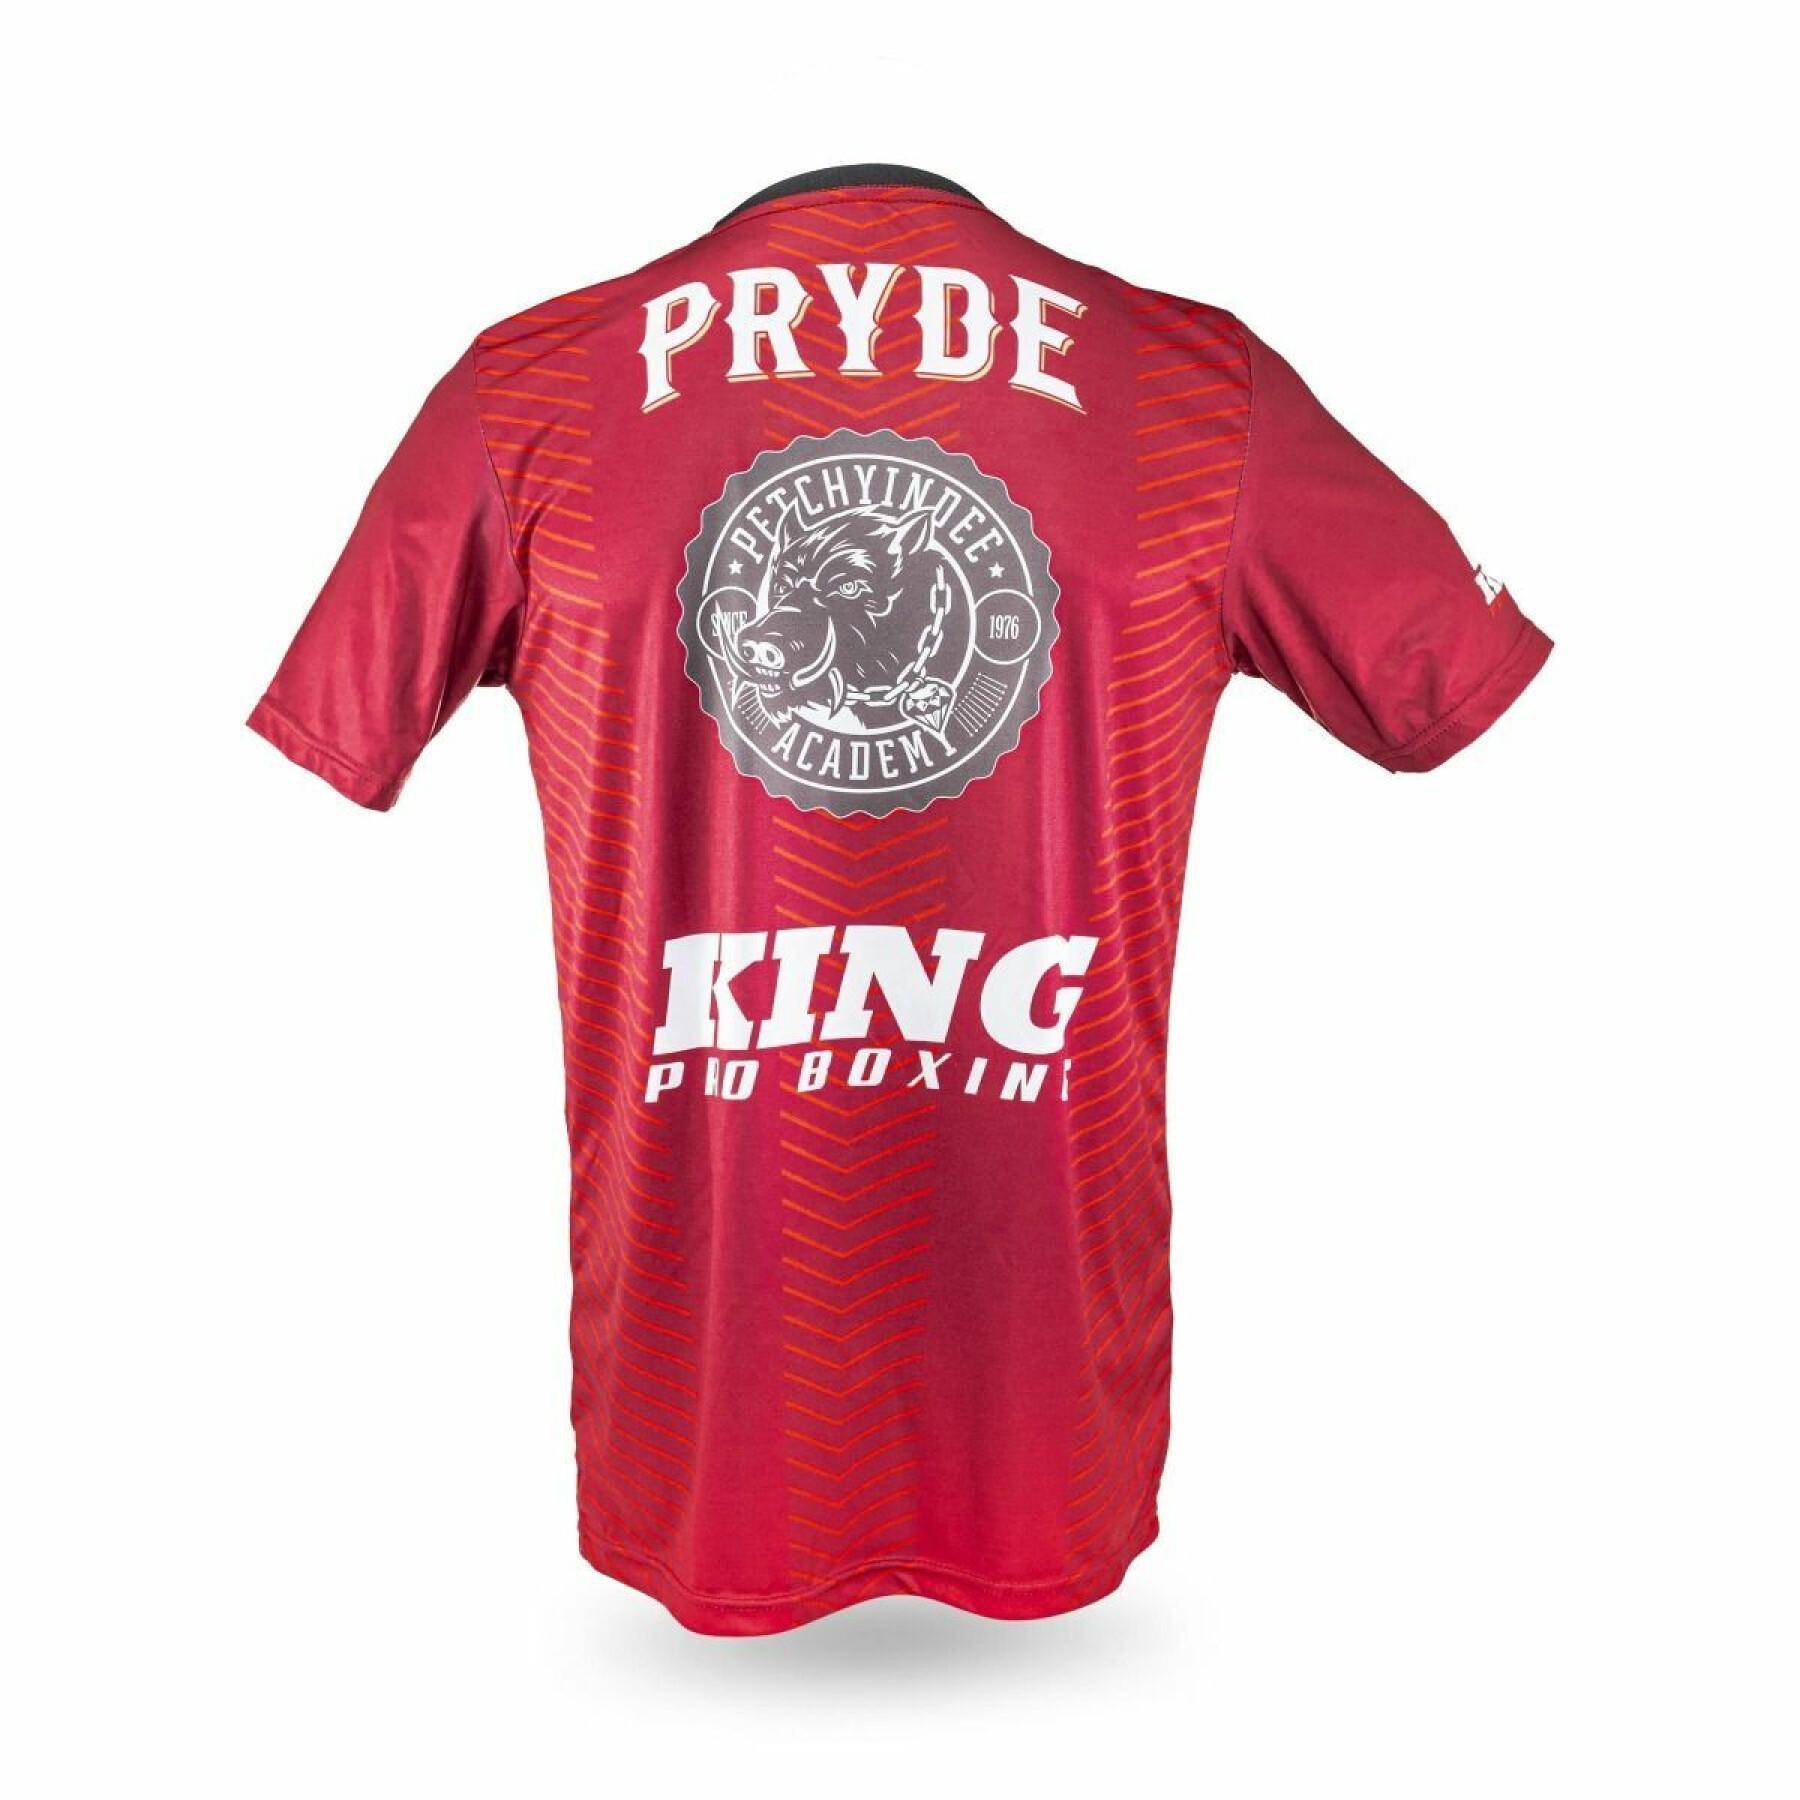 Trikot King Pro Boxing Pryde 1